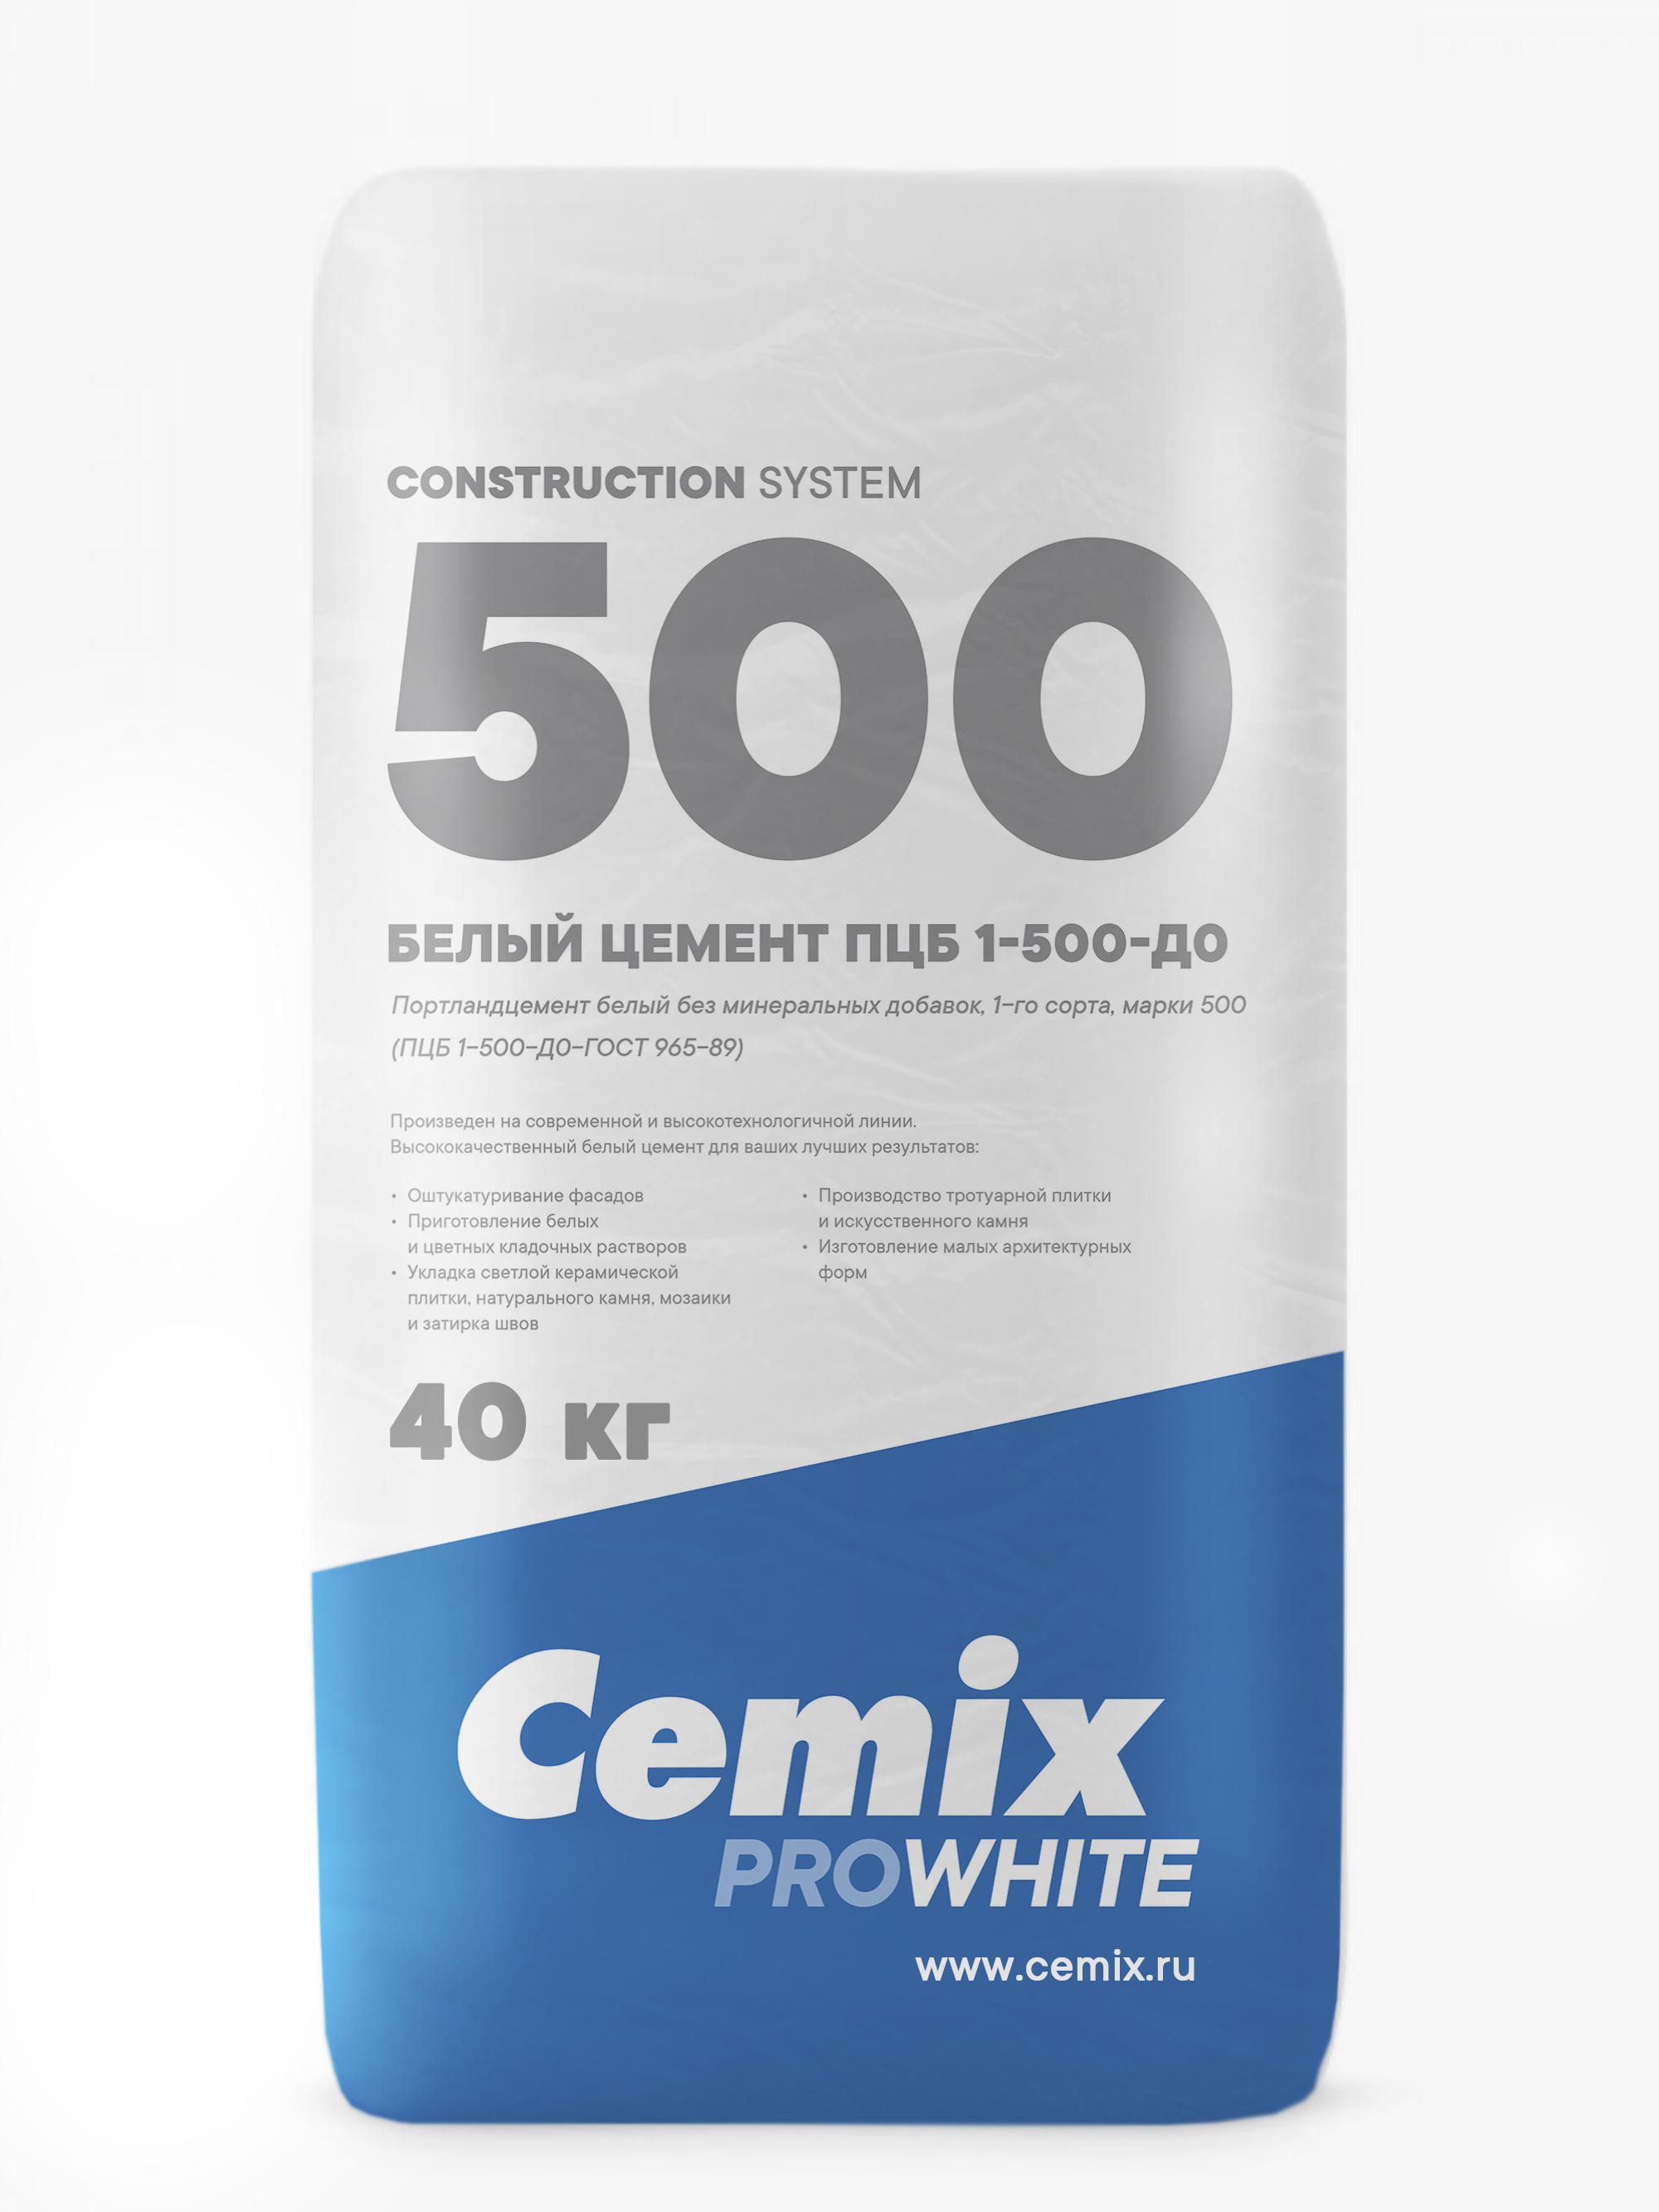 Цемент (Россия, Cemix) ПЦБ 1 - 500 -ДО мешок 40 кг в слинг-беге (1400кг)